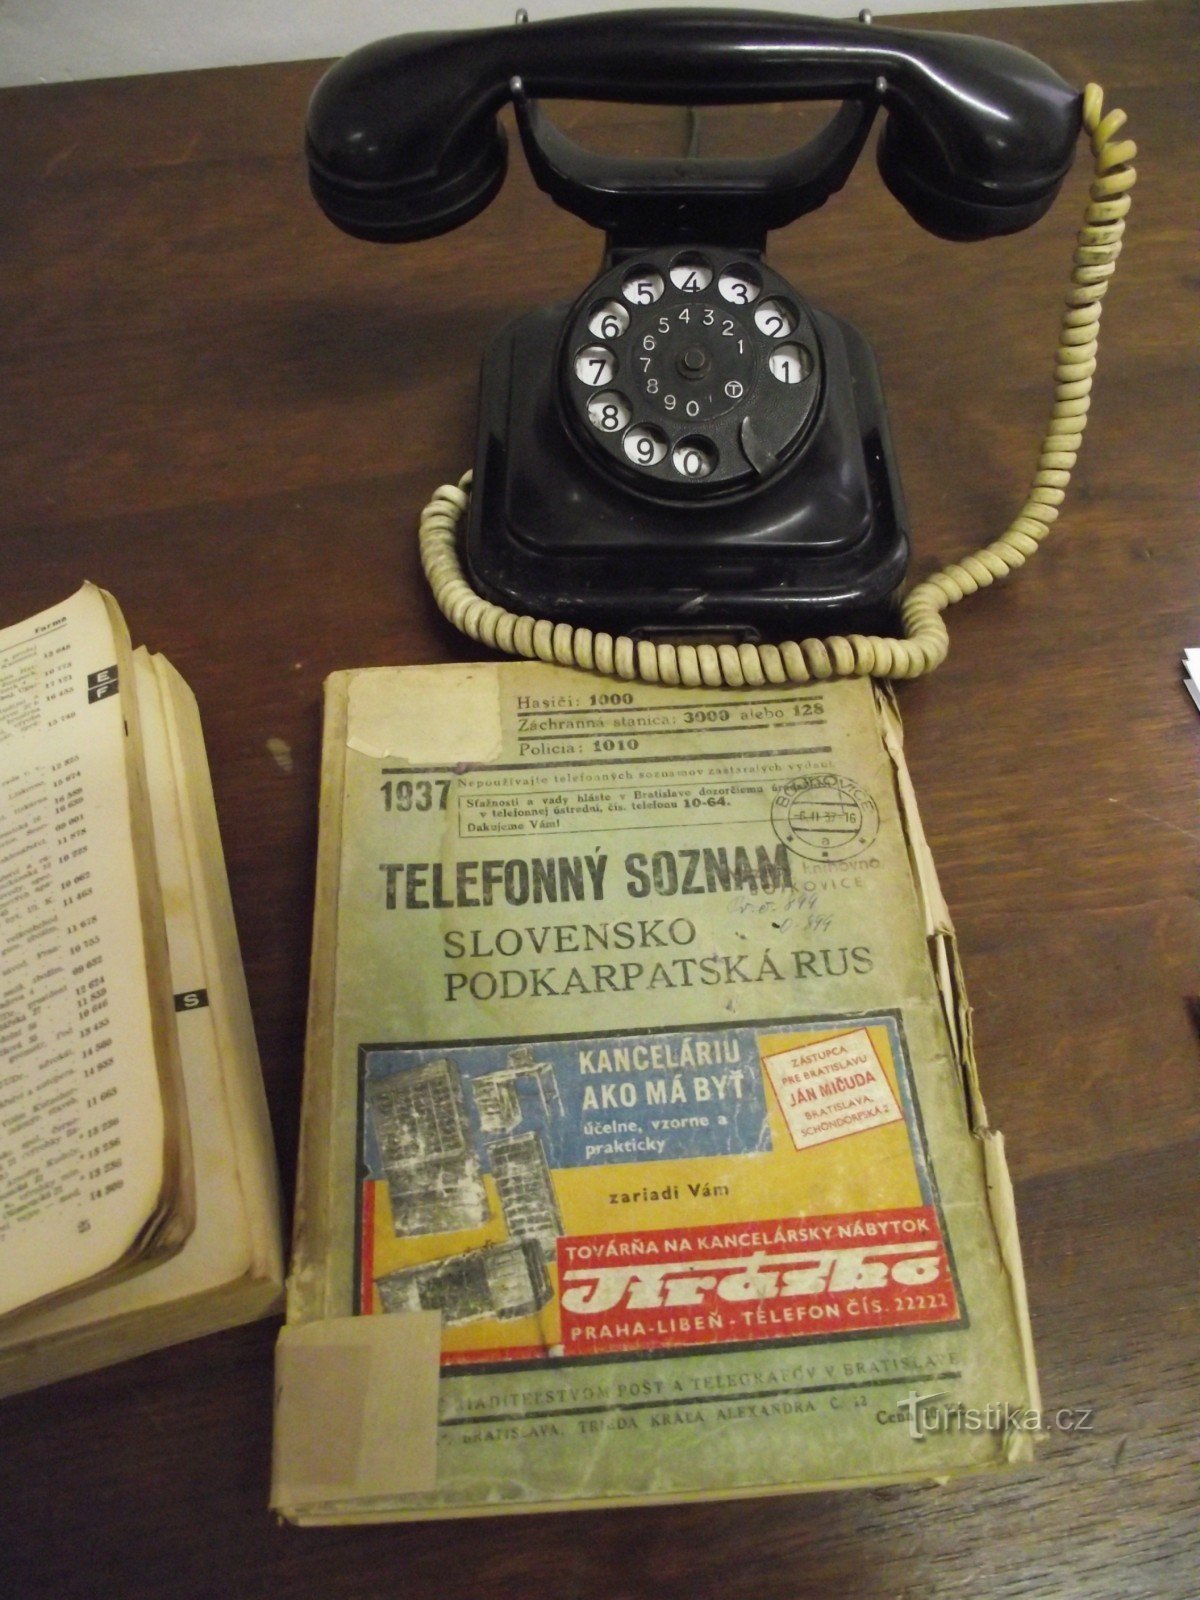 de la exposición sobre la historia de los teléfonos móviles